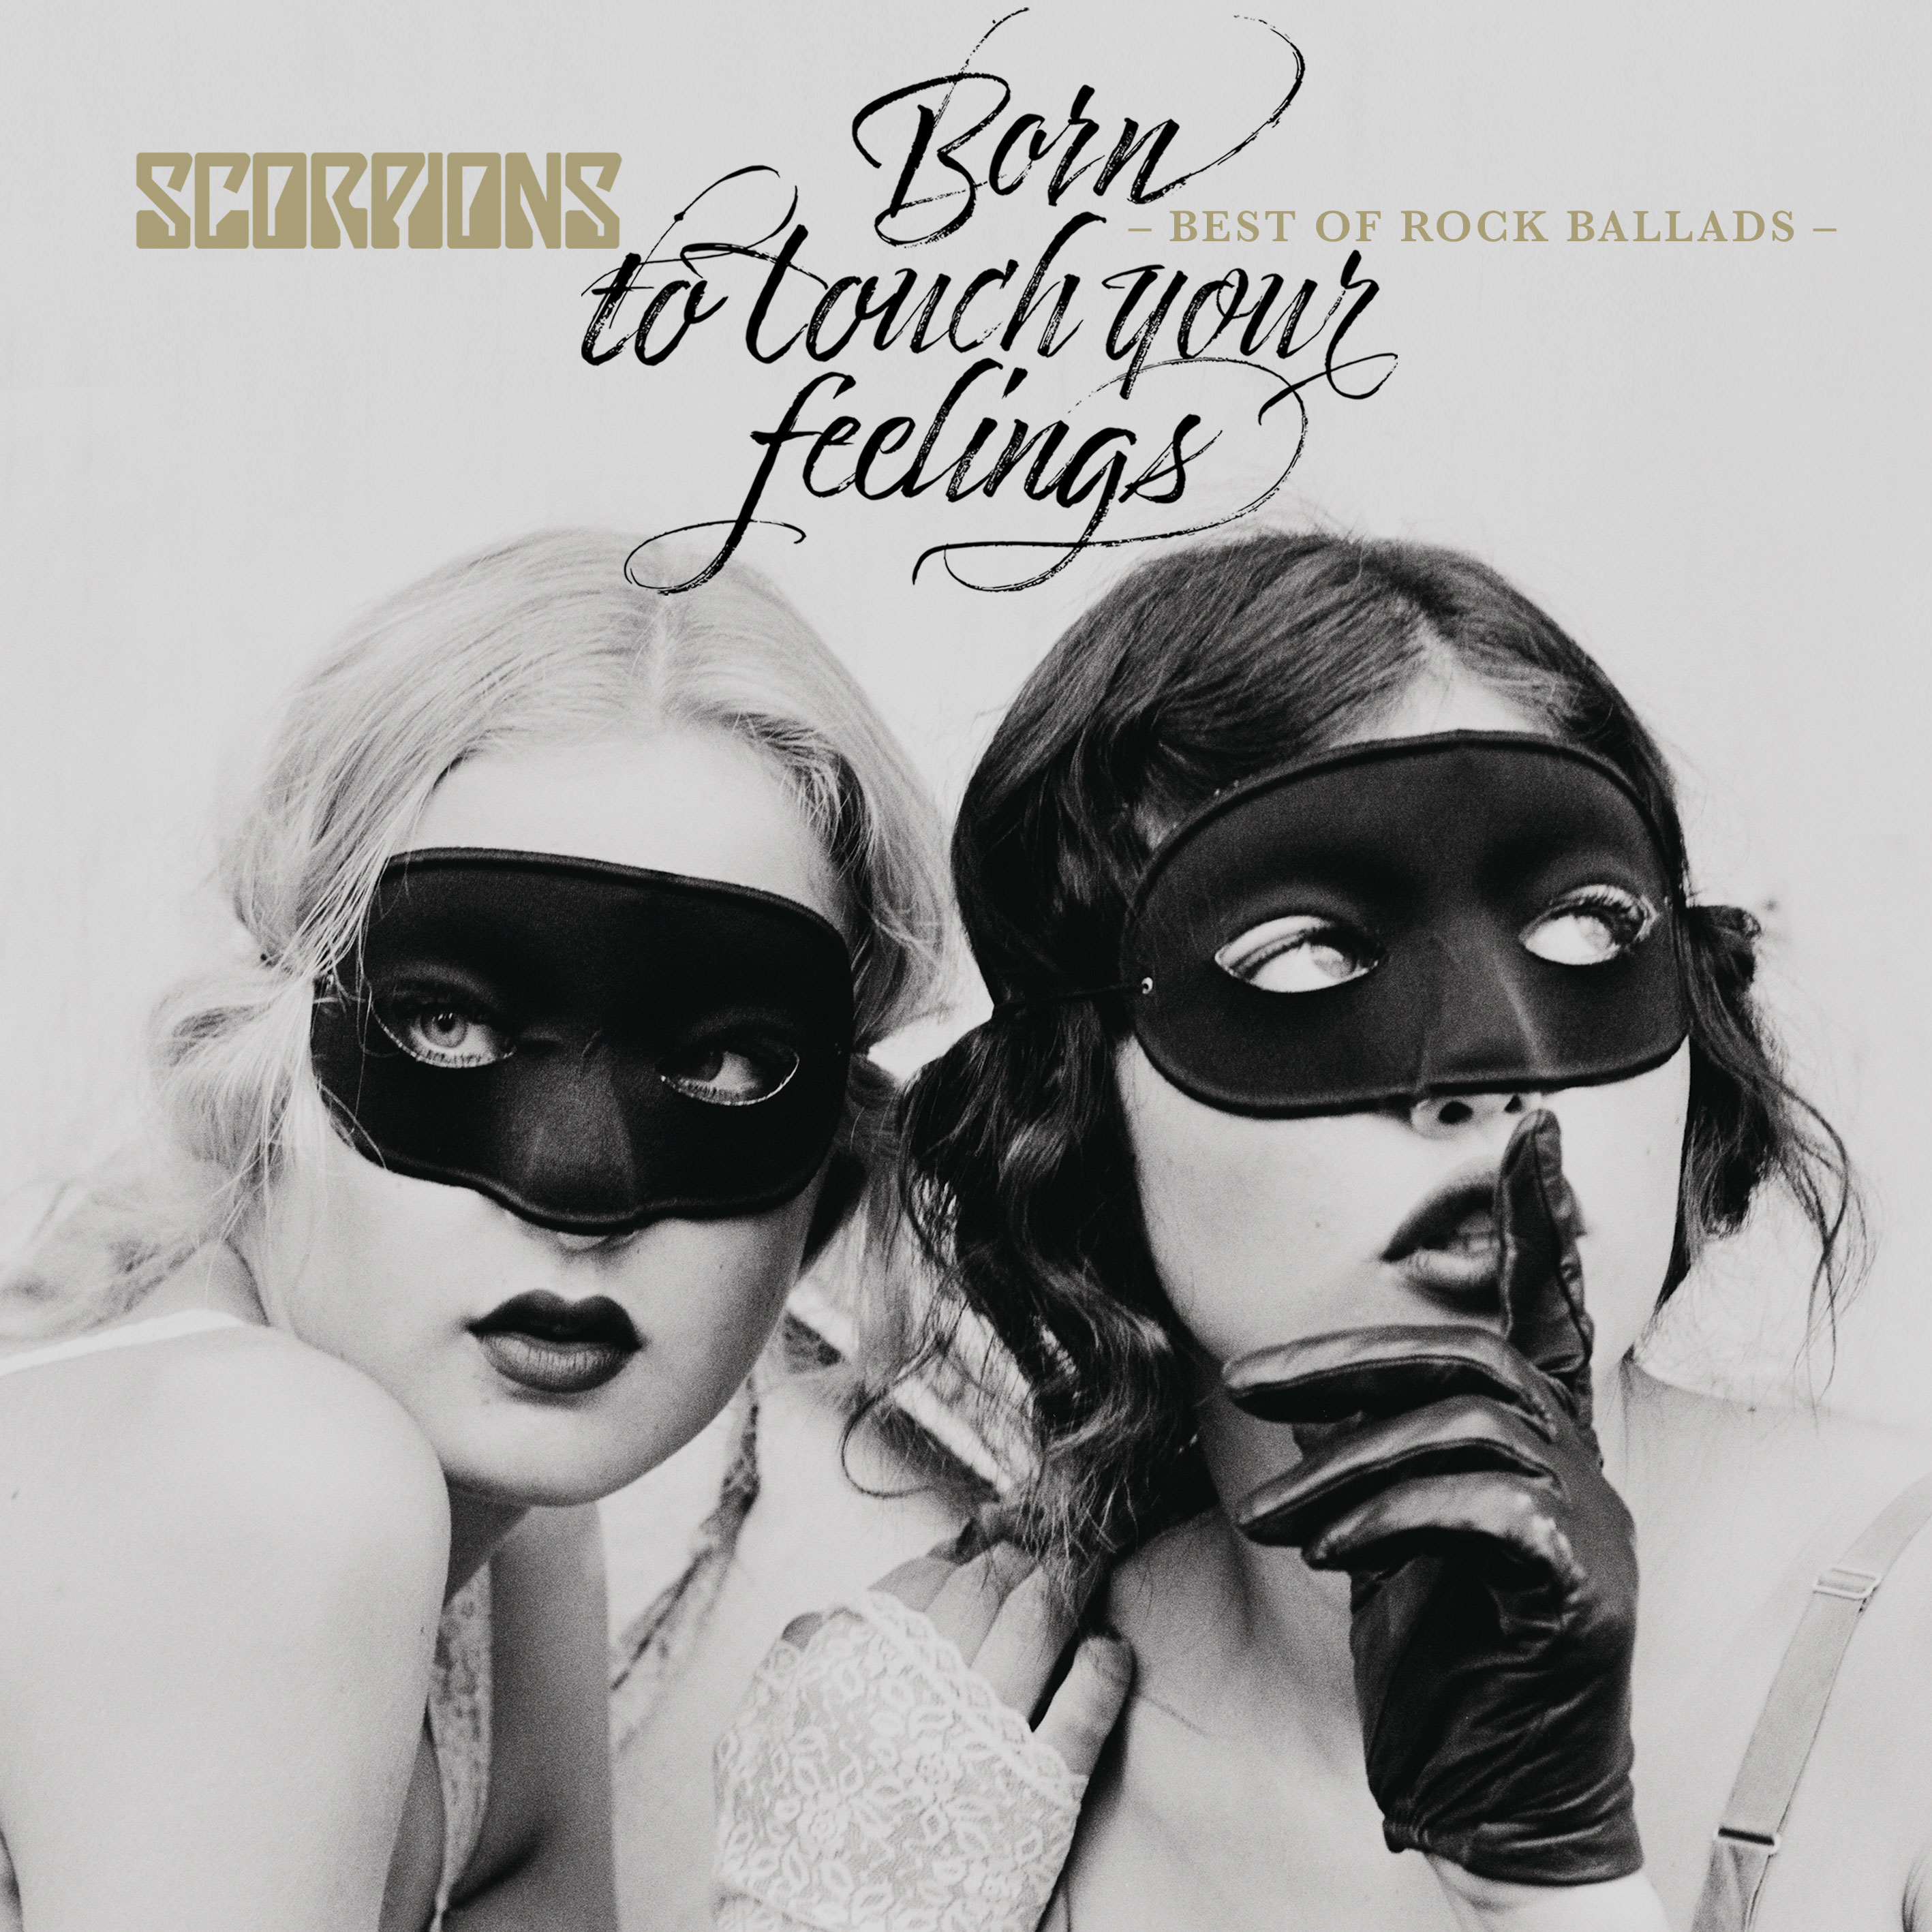 Am 24. November veröffentlichten die Scorpions ein besonderes Best Of-Album. Mit "Born To Touch Your Feelings - Best Of Rock Ballads" präsentiert die Band insgesamt 17 Rockbaladen. 